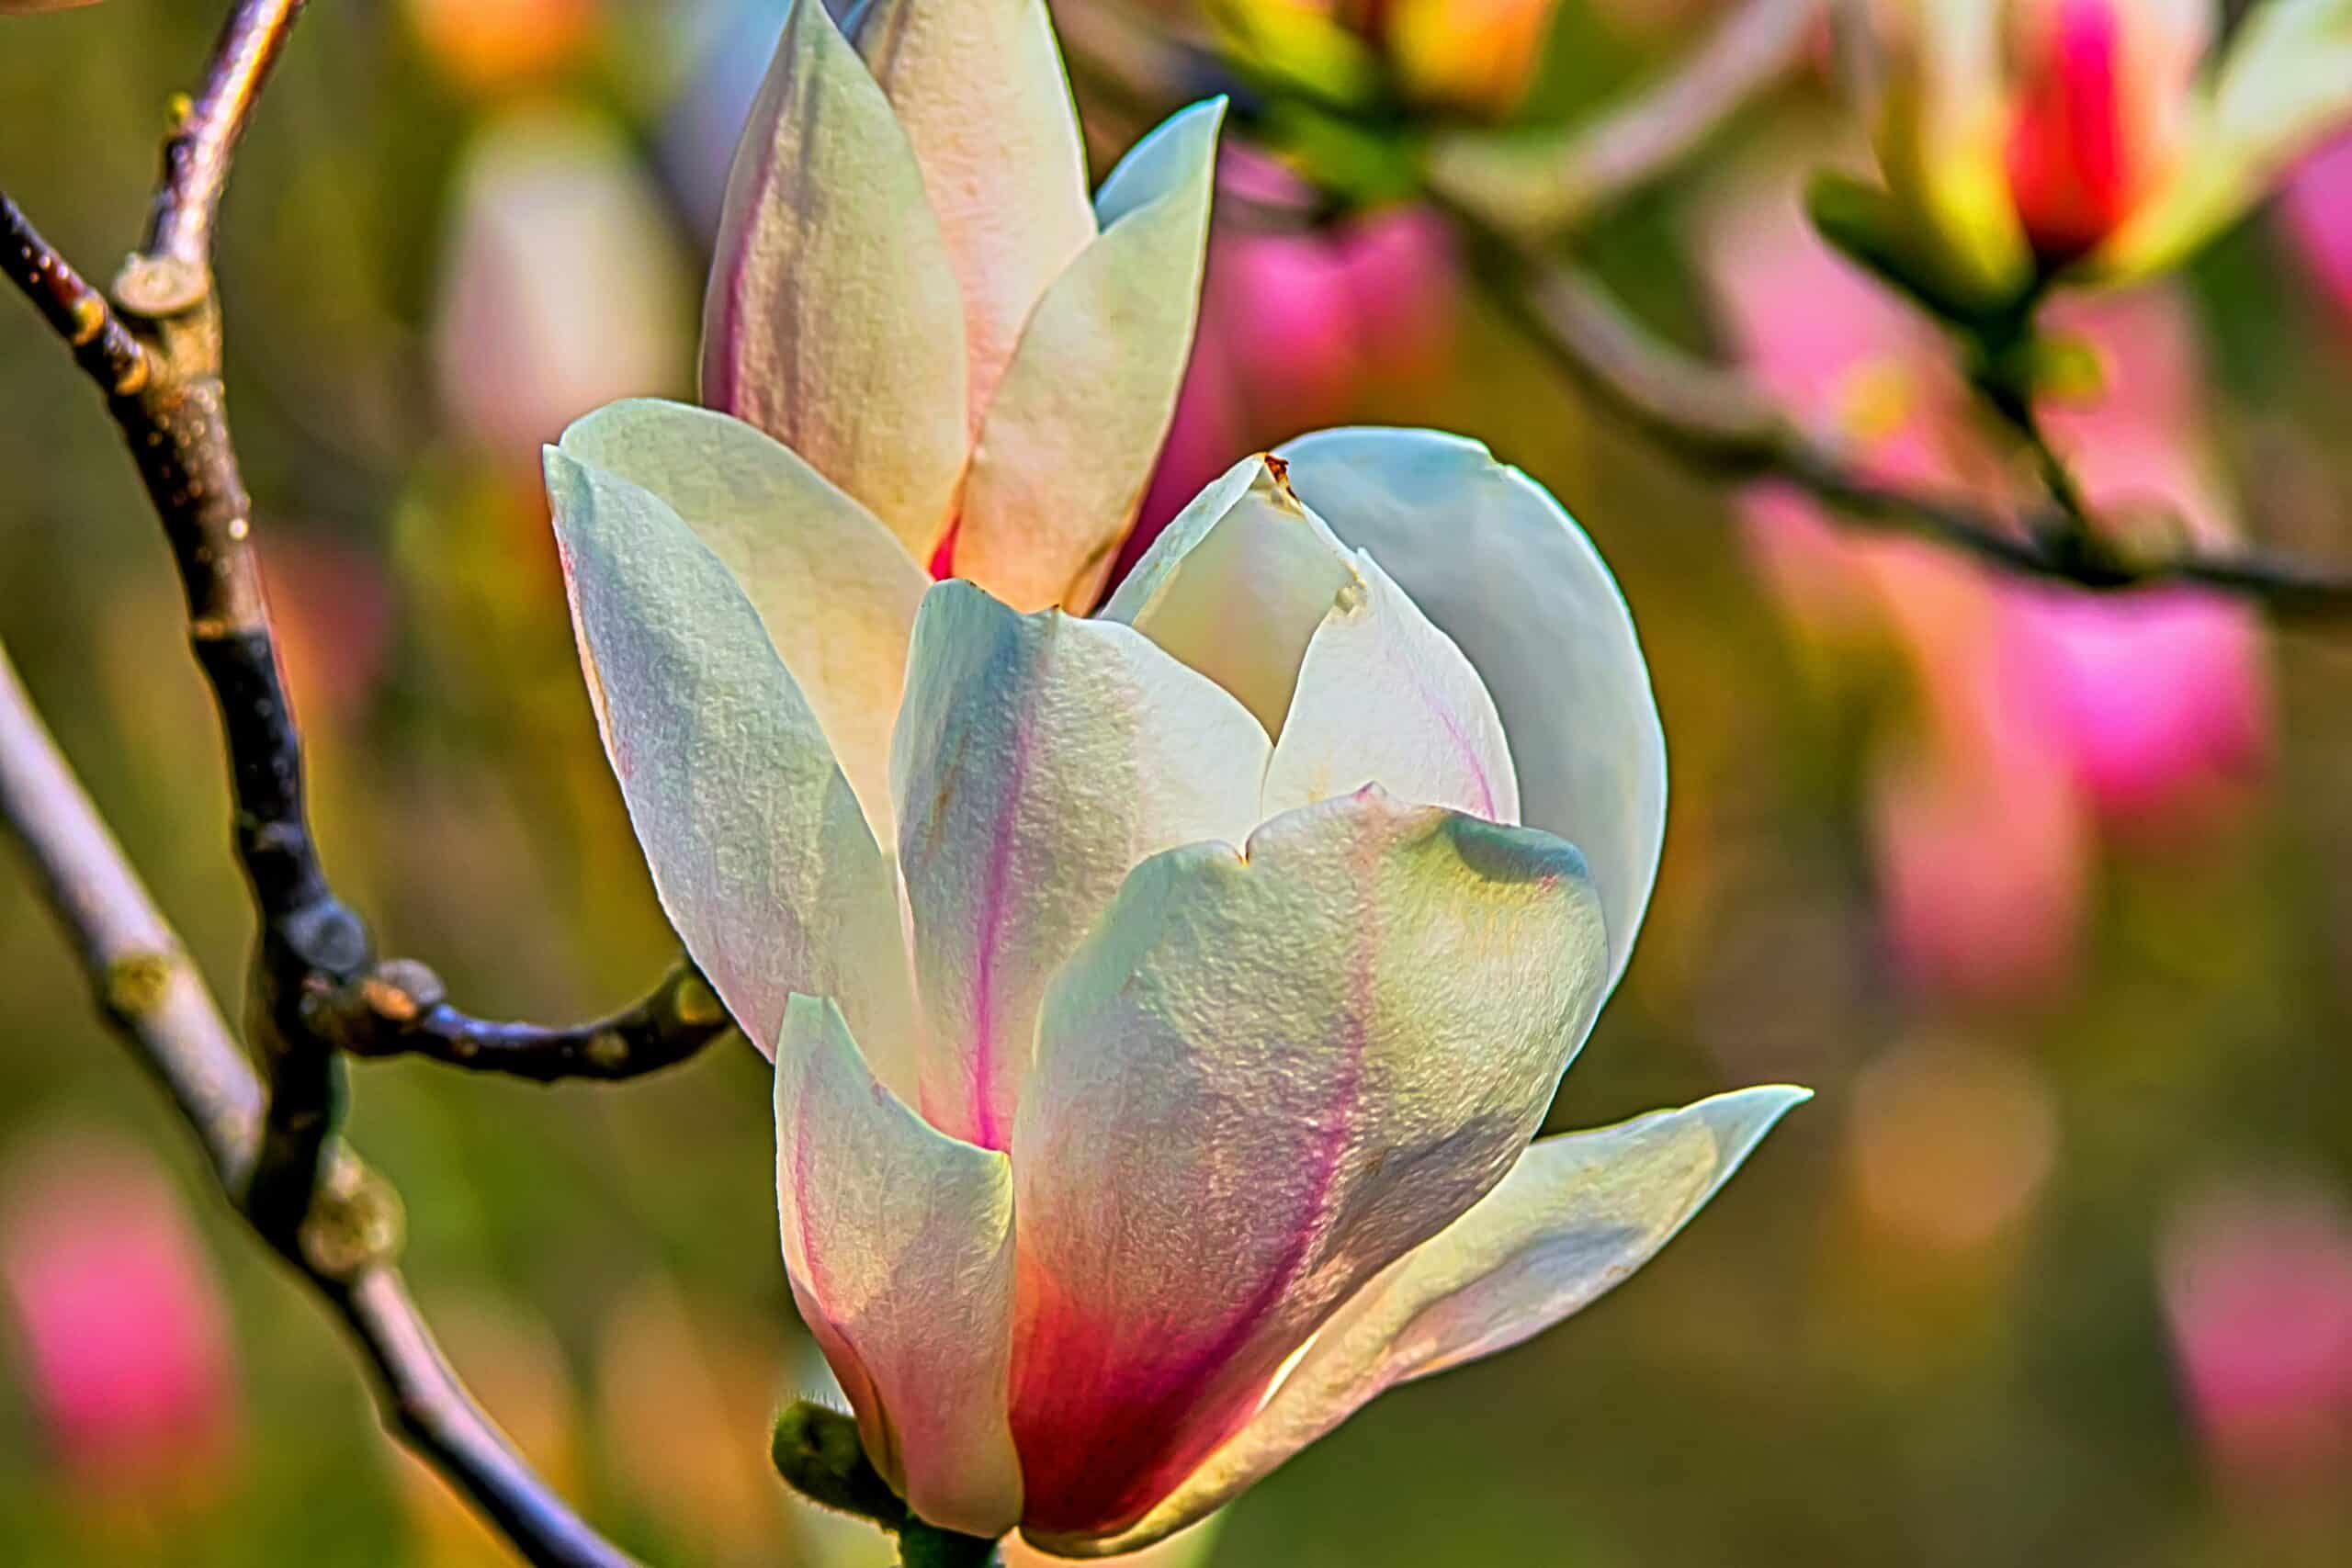 découvrez la beauté des magnolias avec leurs fleurs époustouflantes et leur stature impressionnante. découvrez les différentes variétés, les conseils de plantation et les techniques d'entretien de ces arbres à fleurs emblématiques.